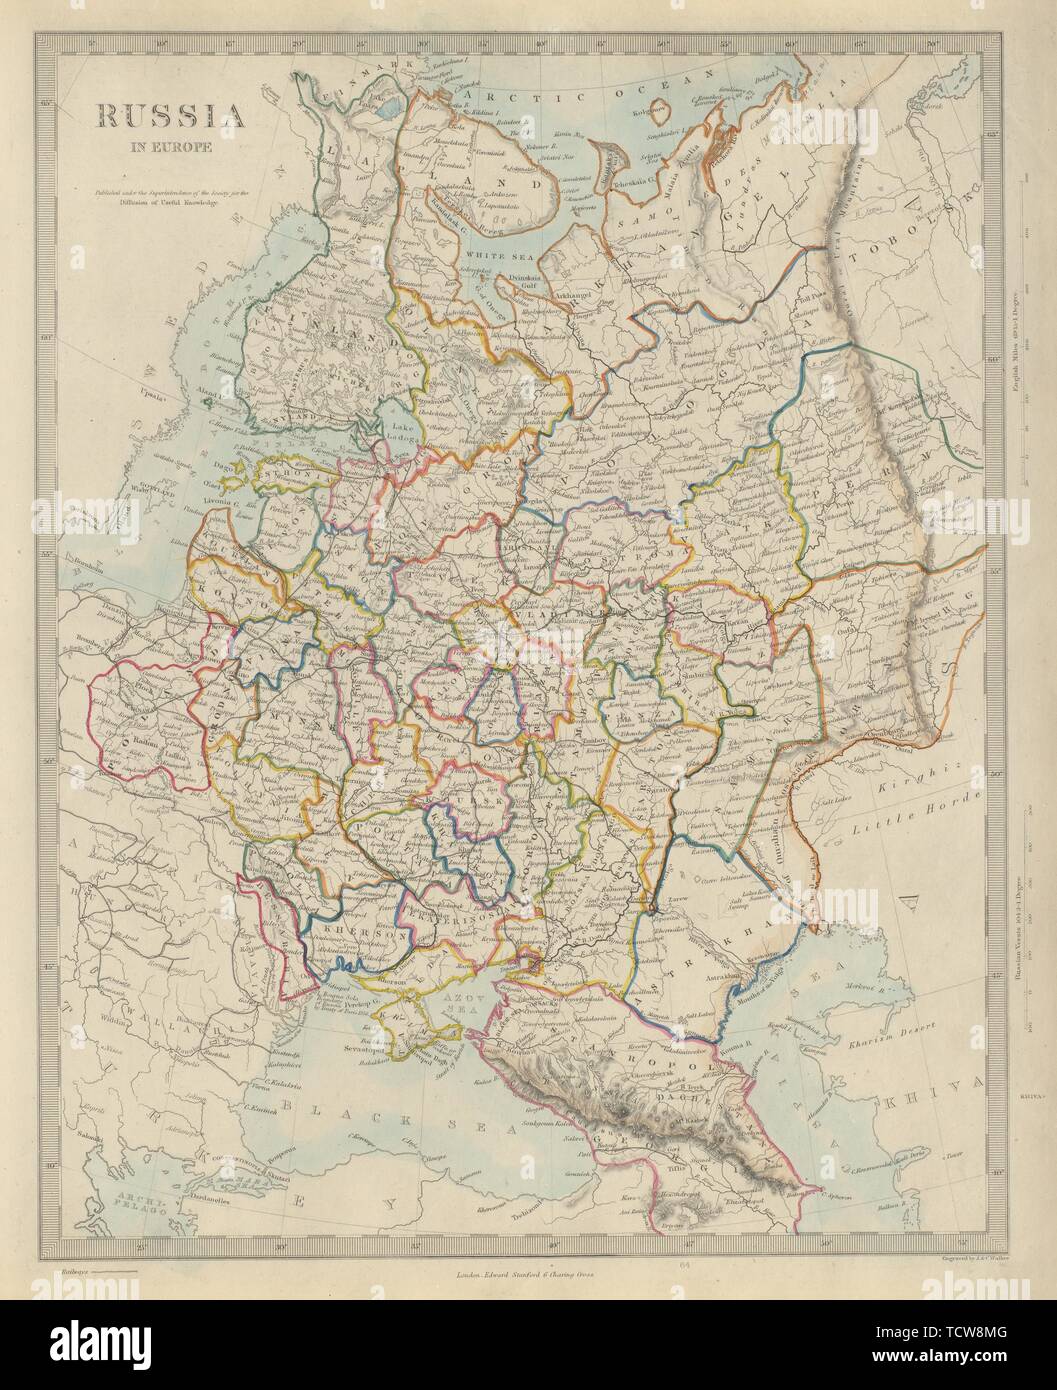 EUROPEAN RUSSIA. Ukraine Belarus Baltics Finland Poland Caucasus. SDUK 1874 map Stock Photo